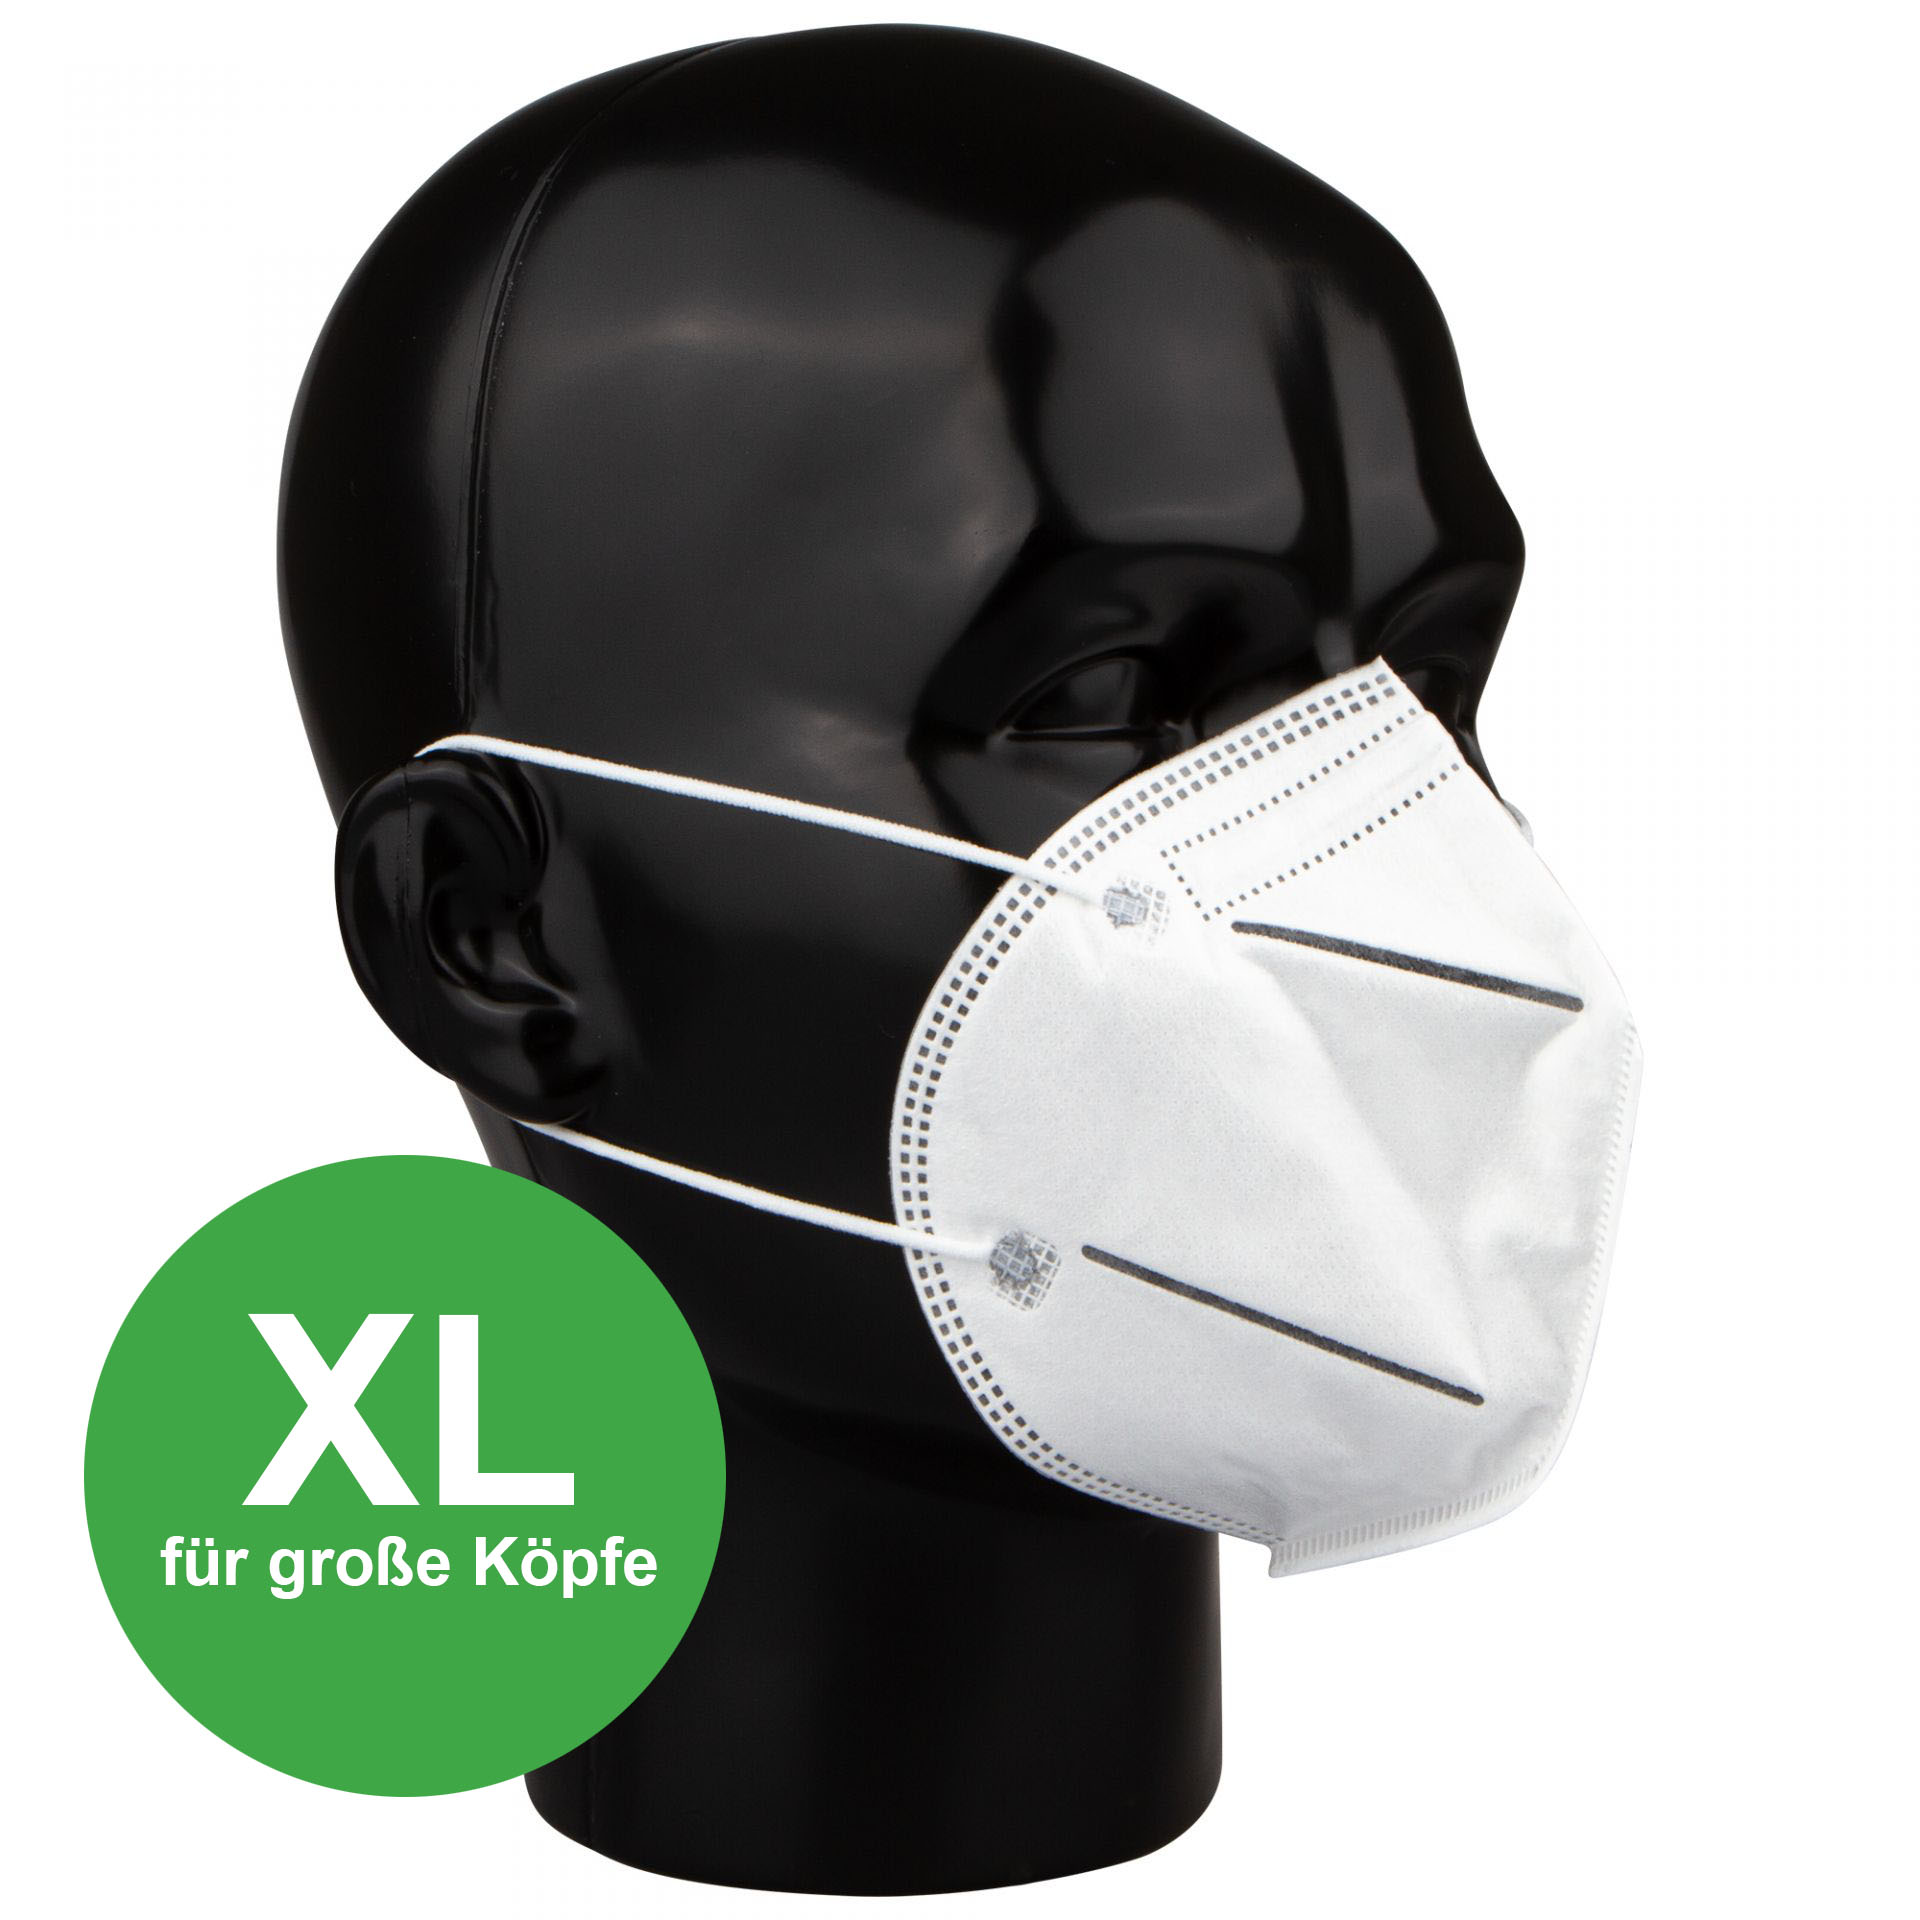 FFP2 Maske - 100 % made in Europa. Atemschutzmaske mit Haltebügel zum optionalen Verbinden der Ohrschlaufen am Hinterkopf. Filterleistung ≥ 95 %. Erhältilich in M, L und XL.